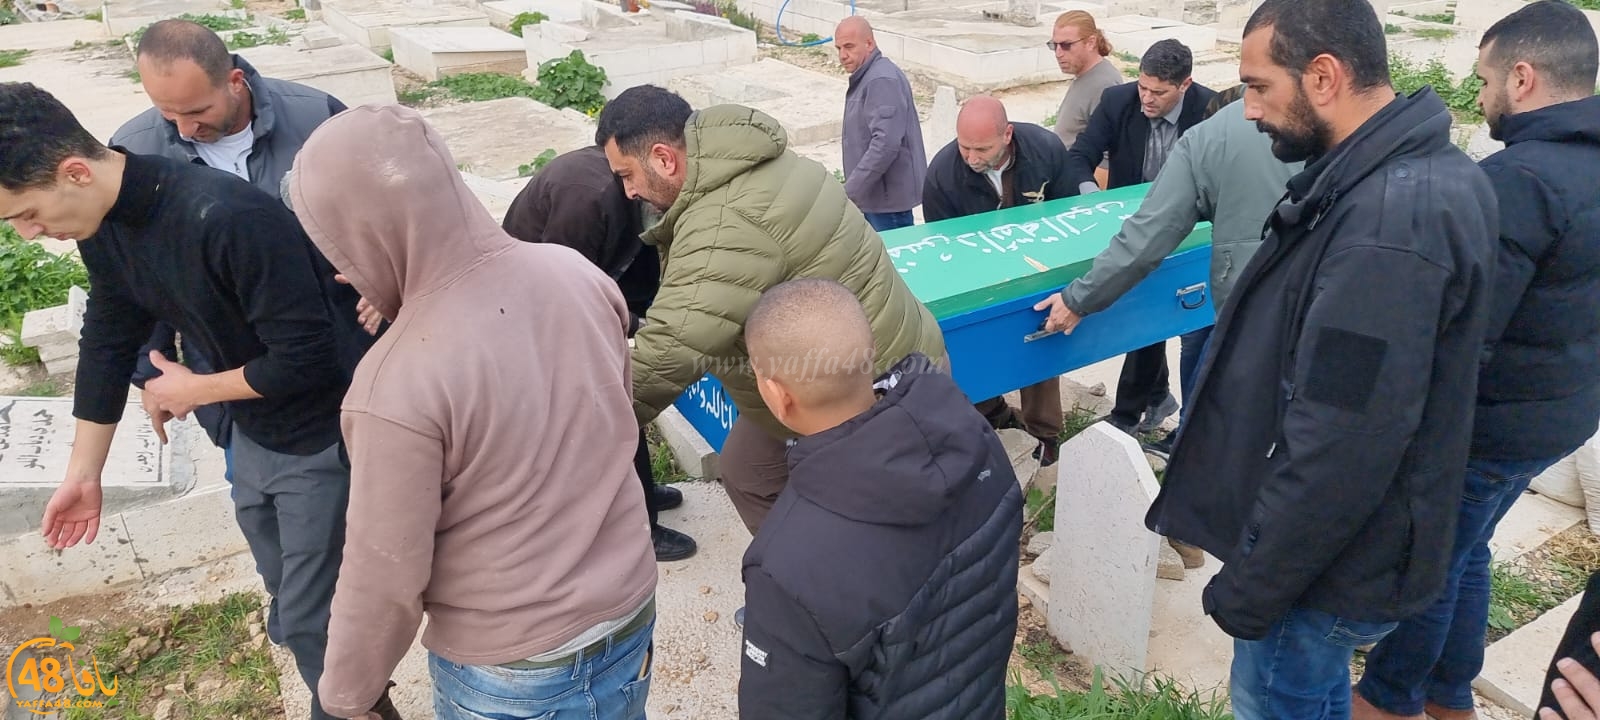 ماتت كما تمنت .. اكرام الميت من يافا تُساعد في دفن سيدة ألمانية مسلمة بالقدس 